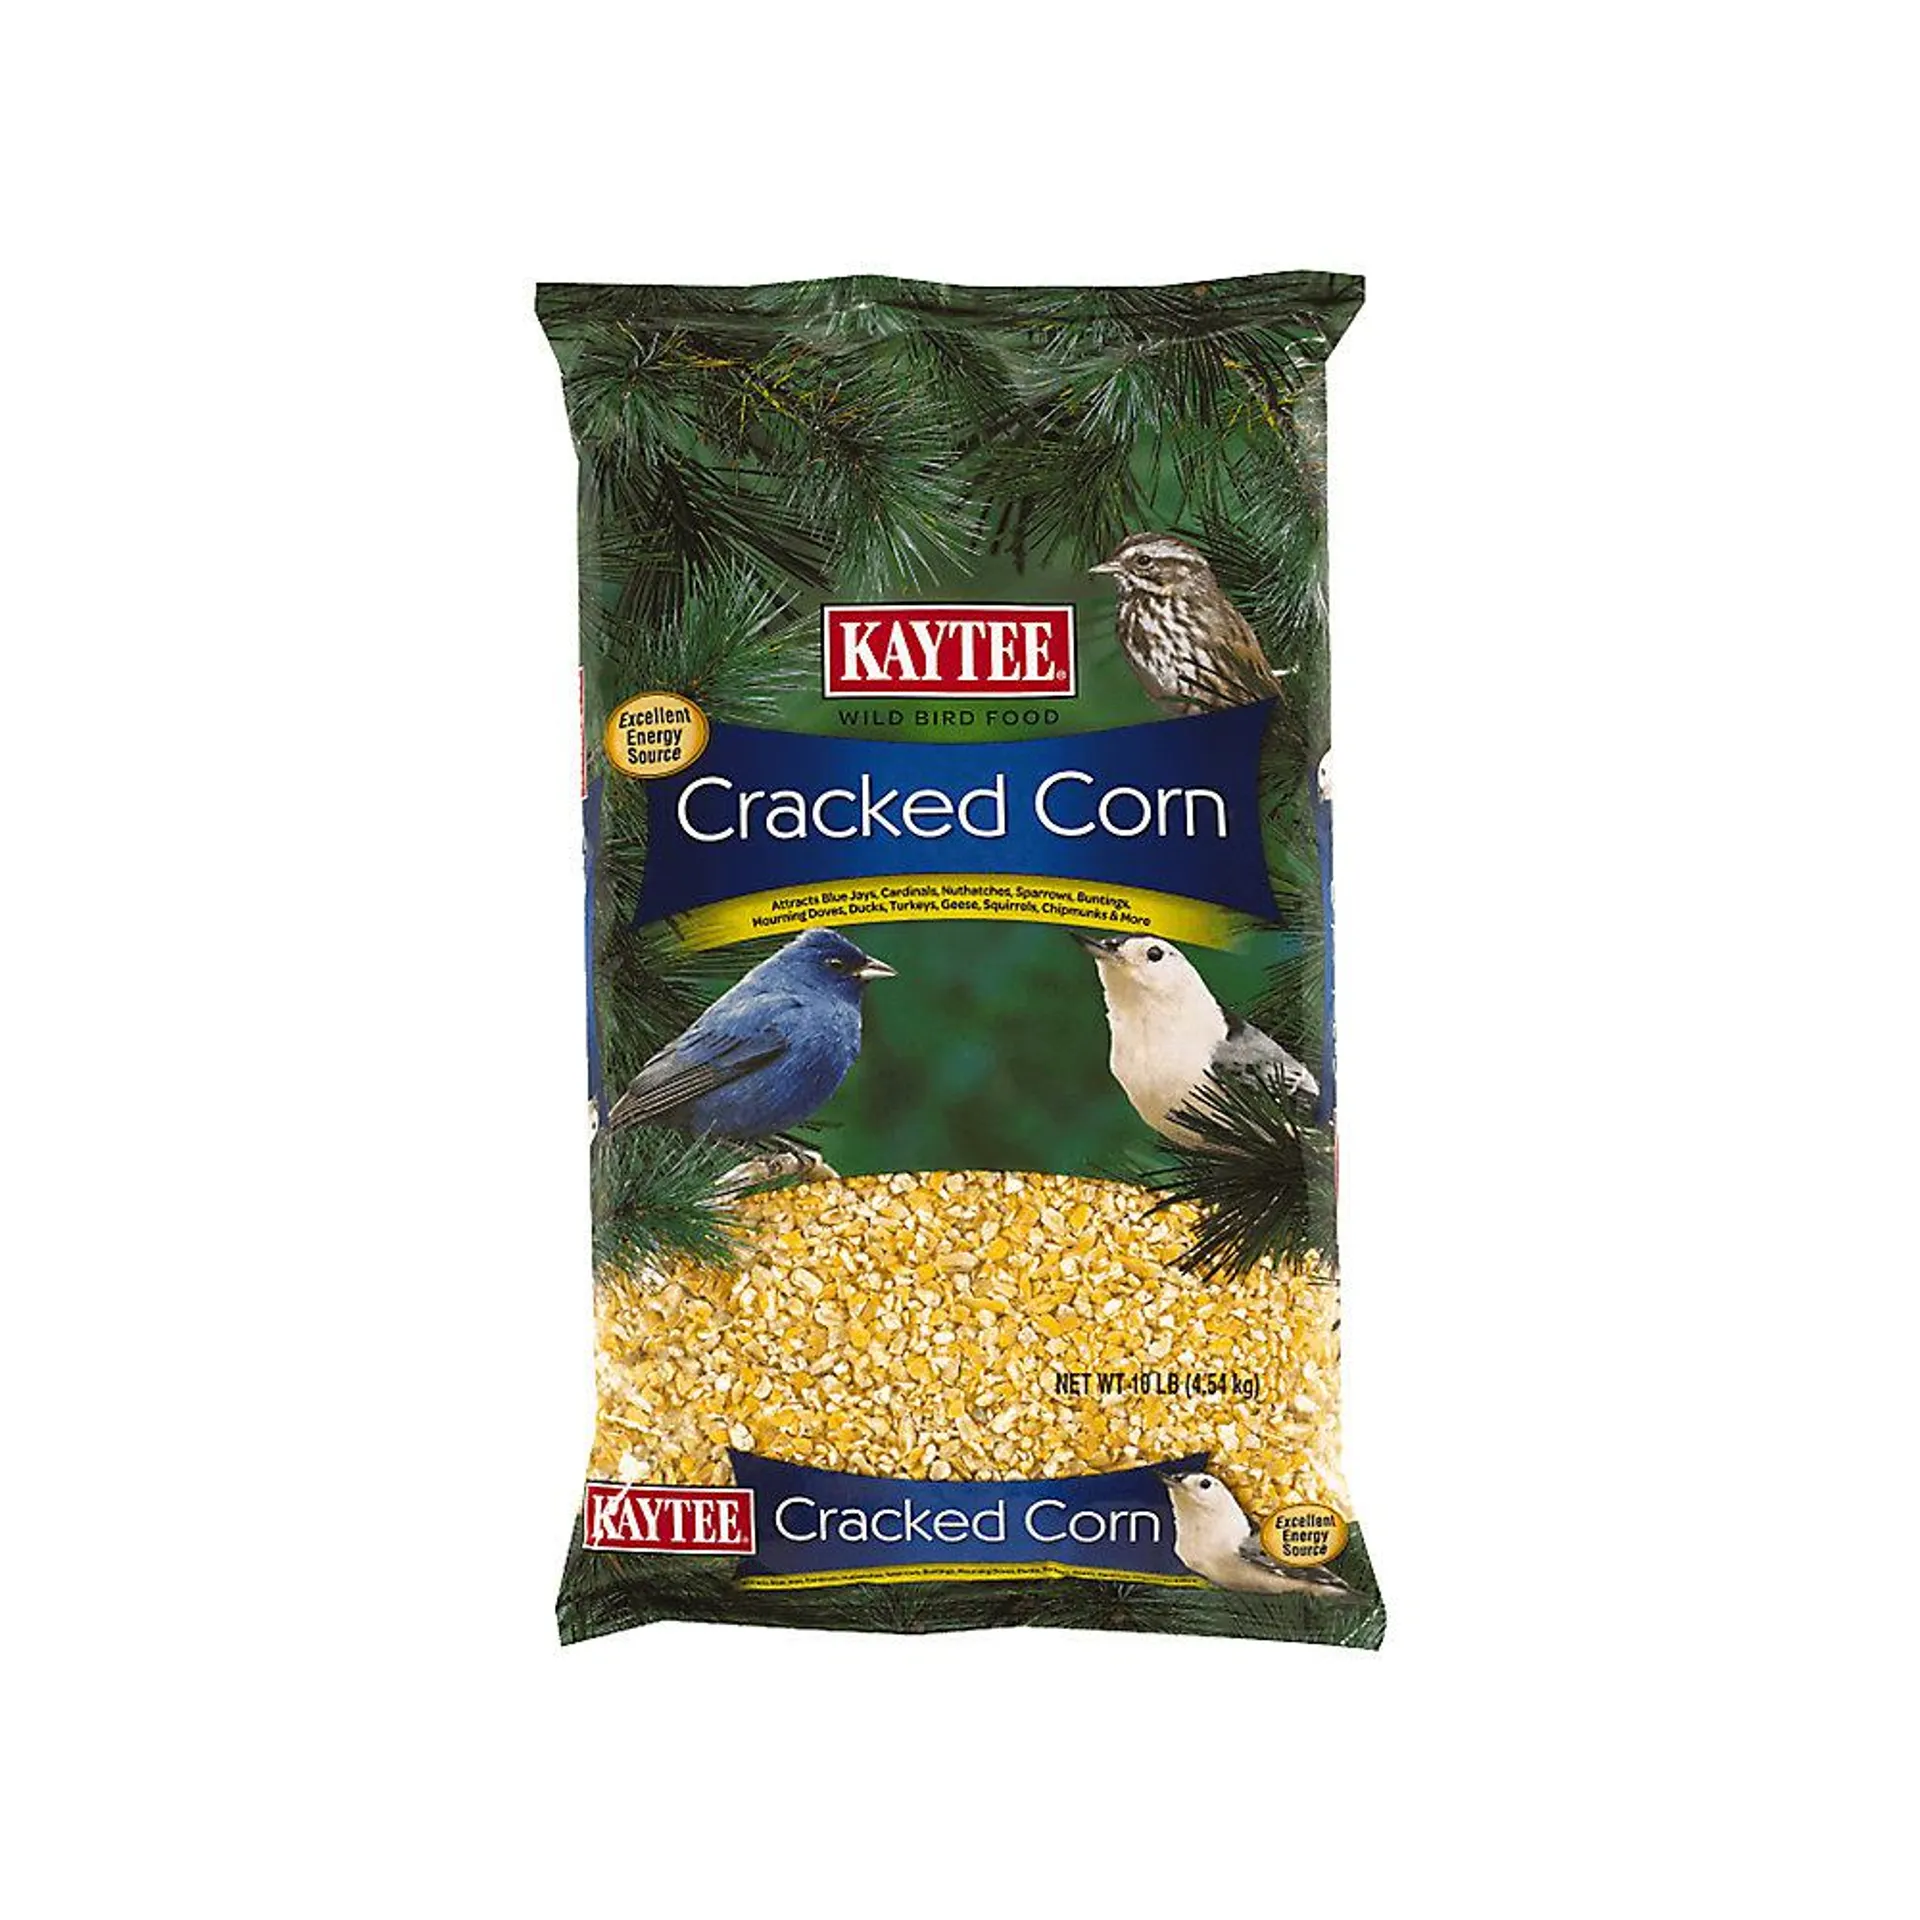 KAYTEE® Cracked Corn Wild Bird Food